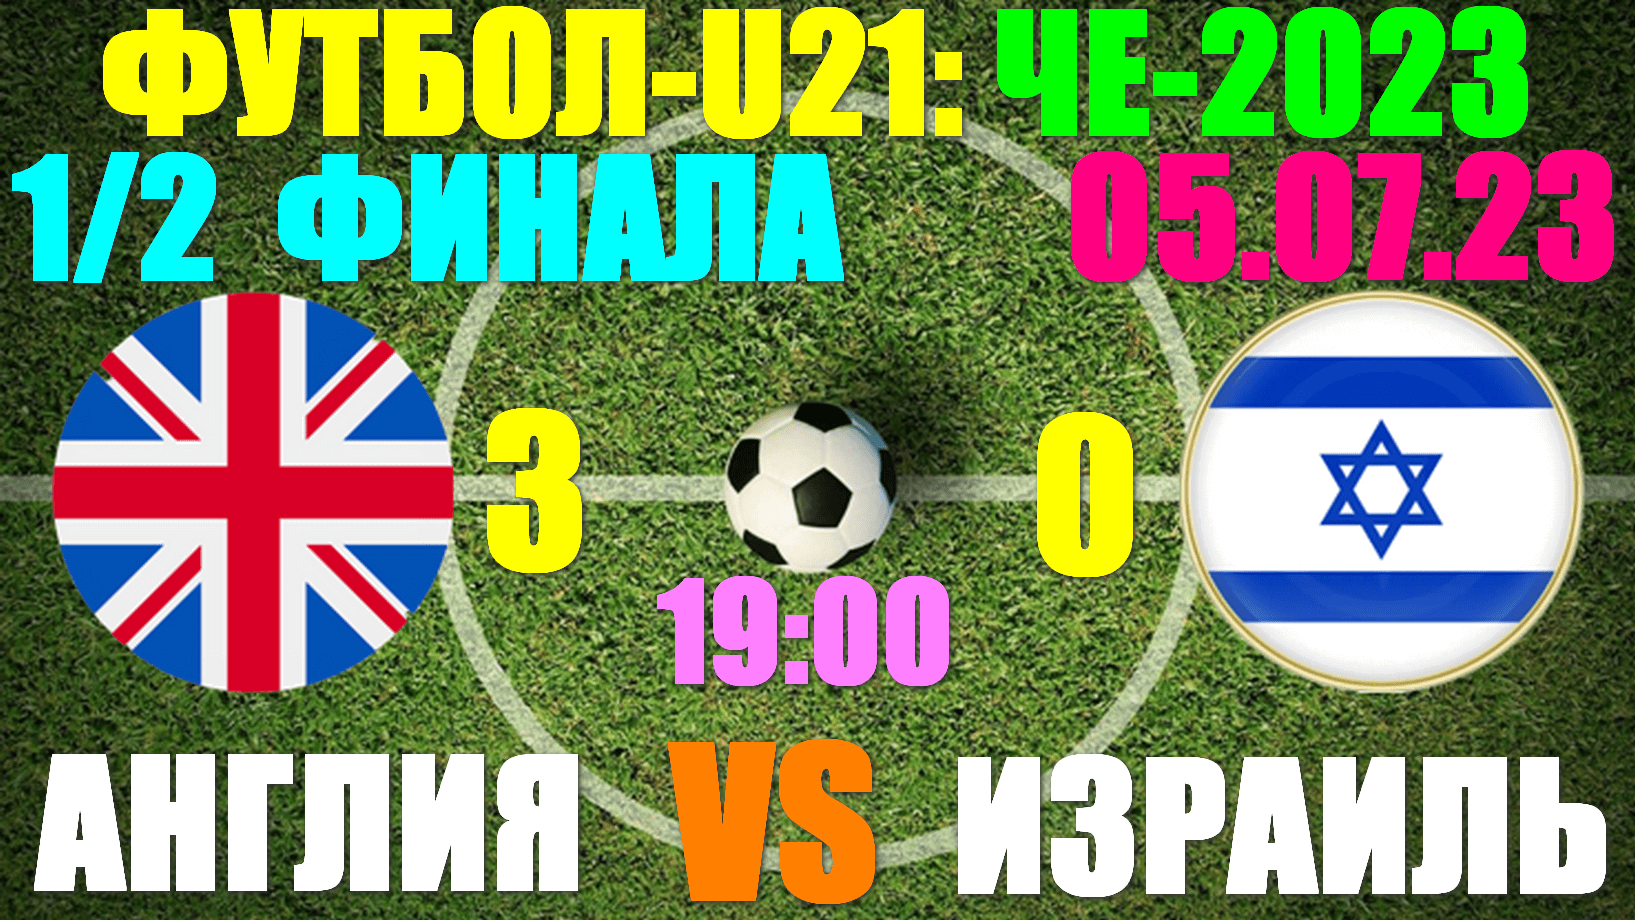 Футбол: U-21 Чемпионат Европы-2023. 1/2 финала: 05.07.23. Англия 3:0 Израиль